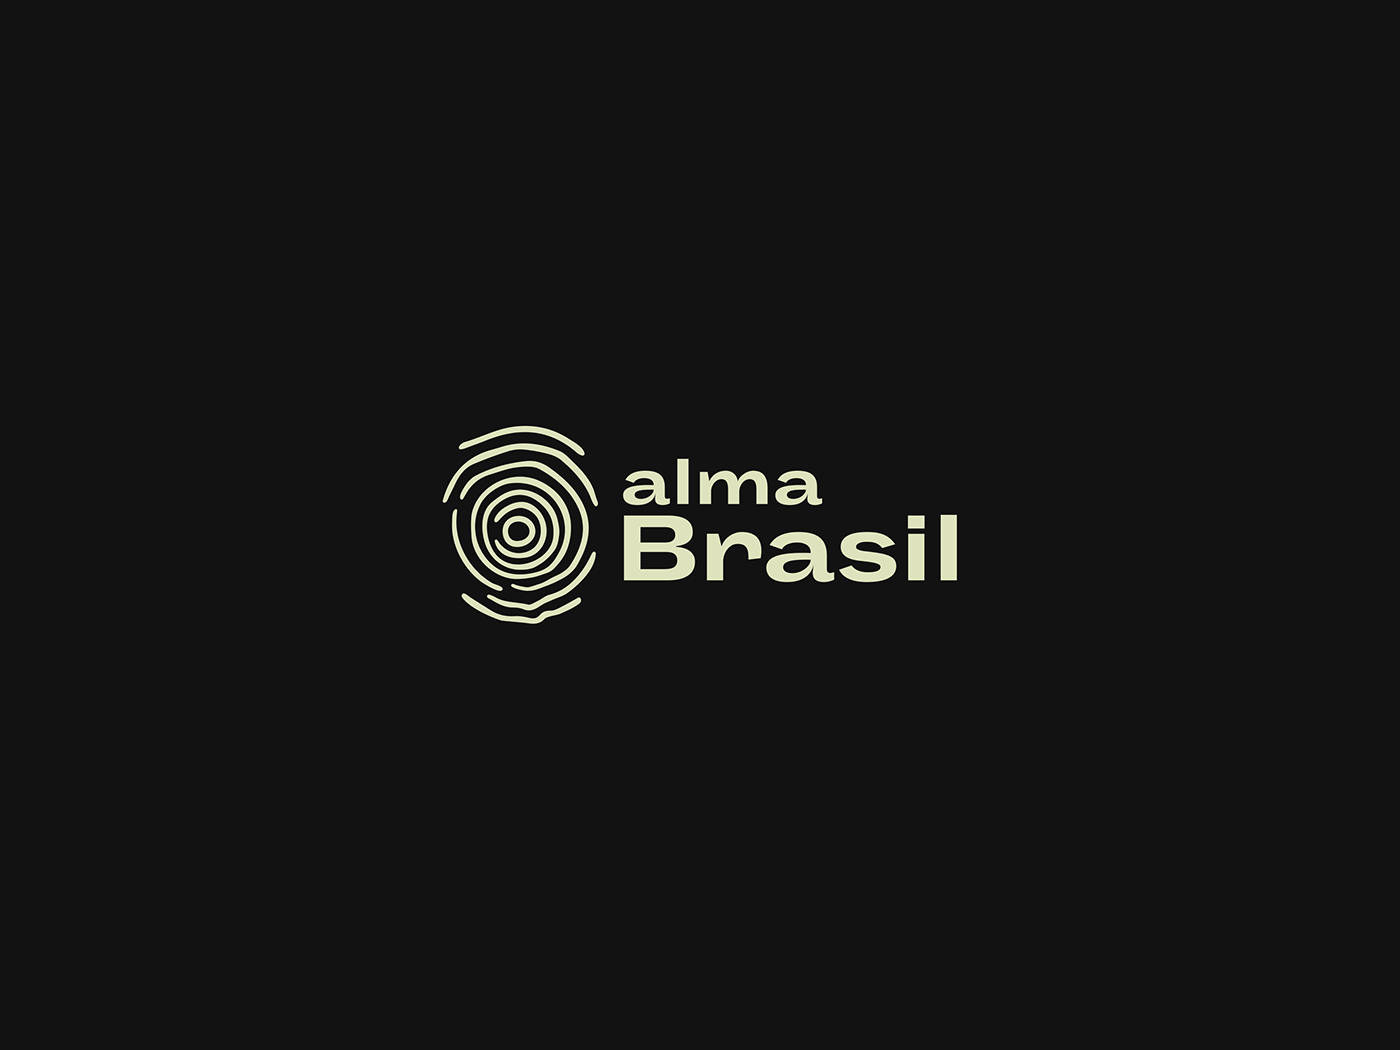 T恤品牌Brazil Soul视觉VI设计